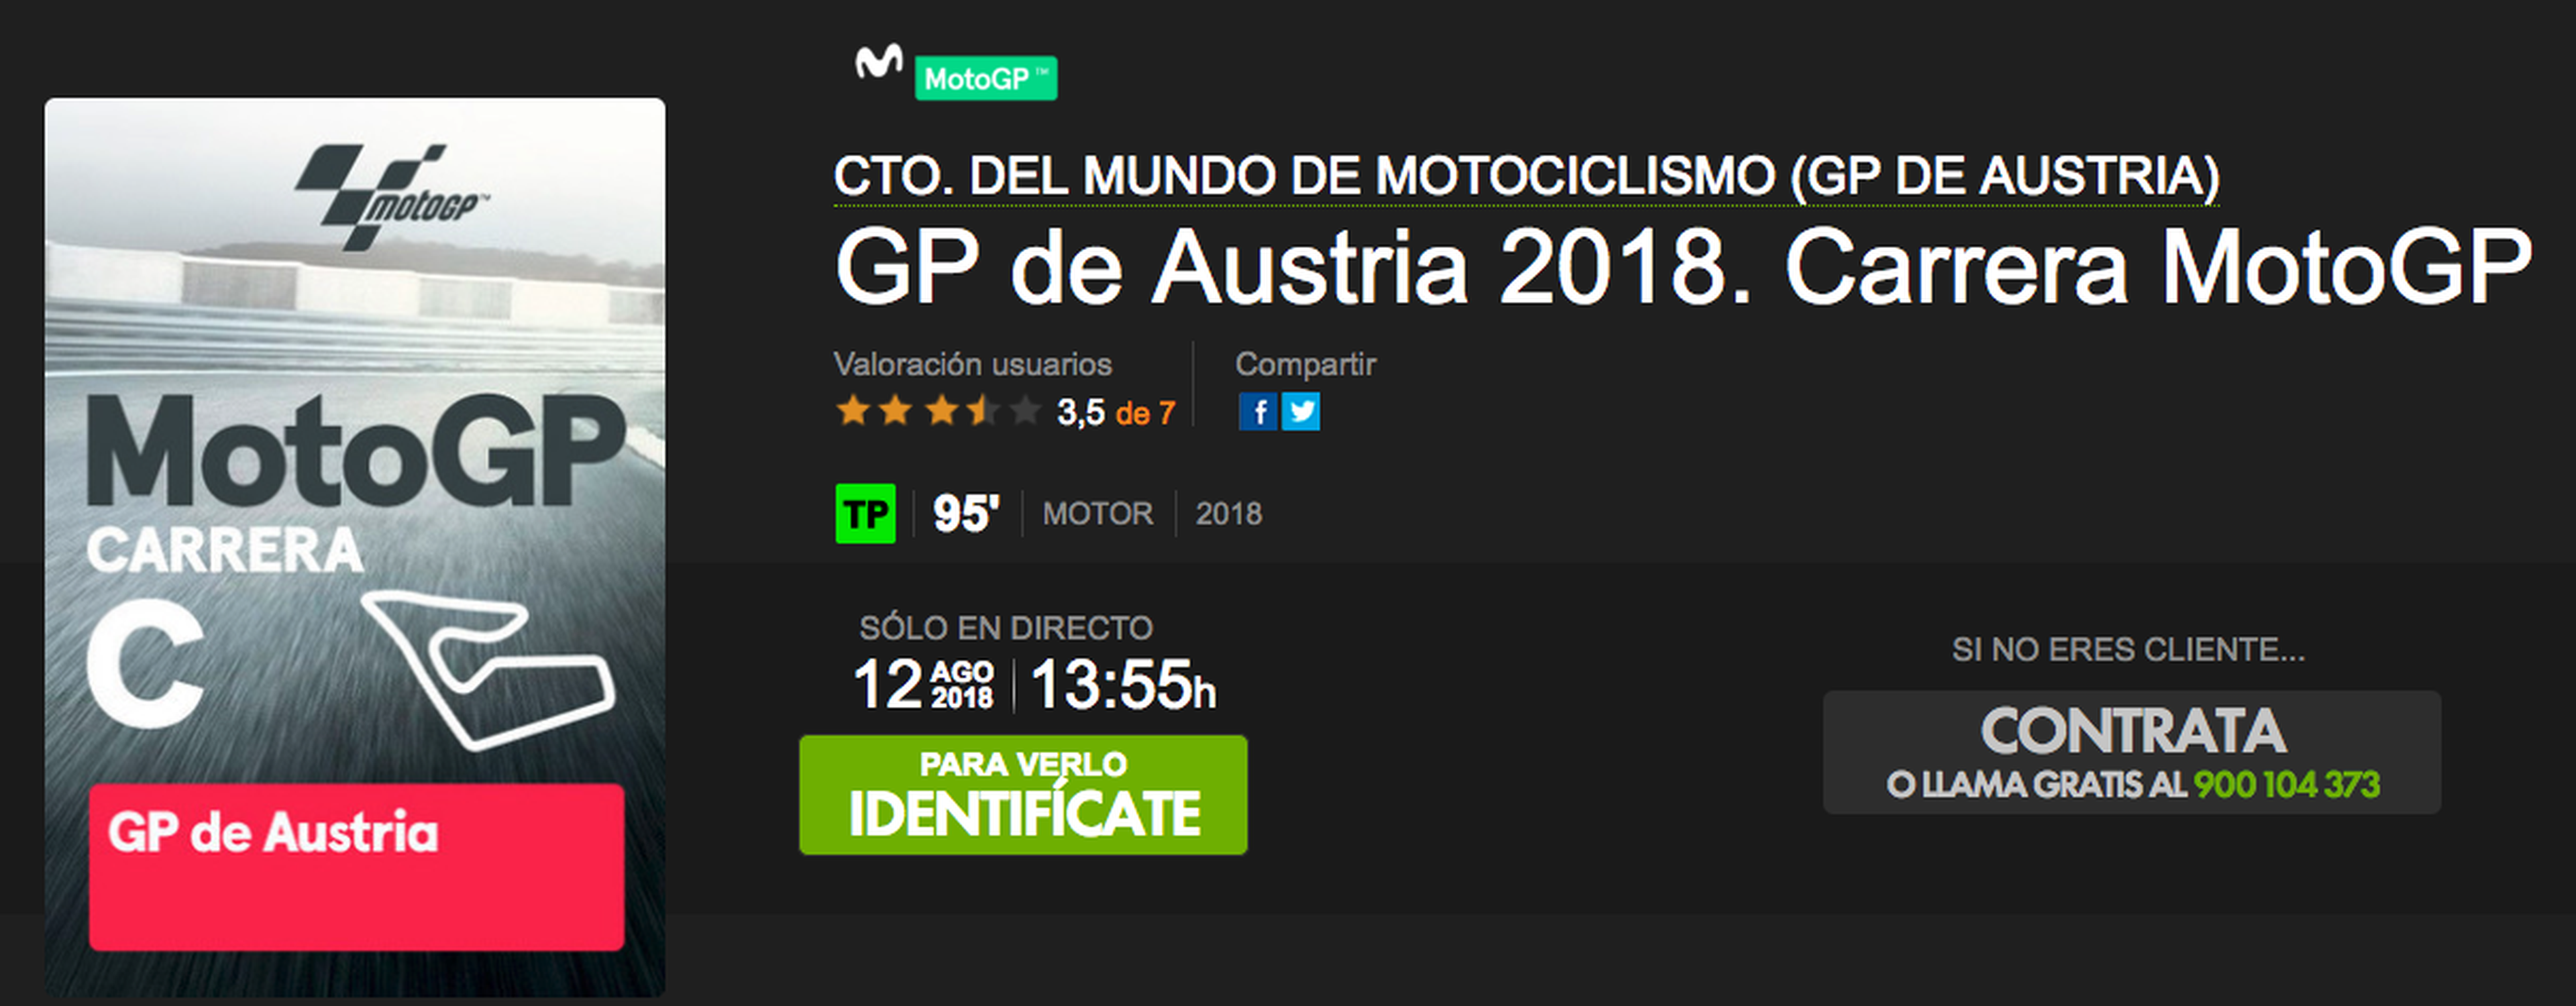 ver motogp austria 2018 por internet